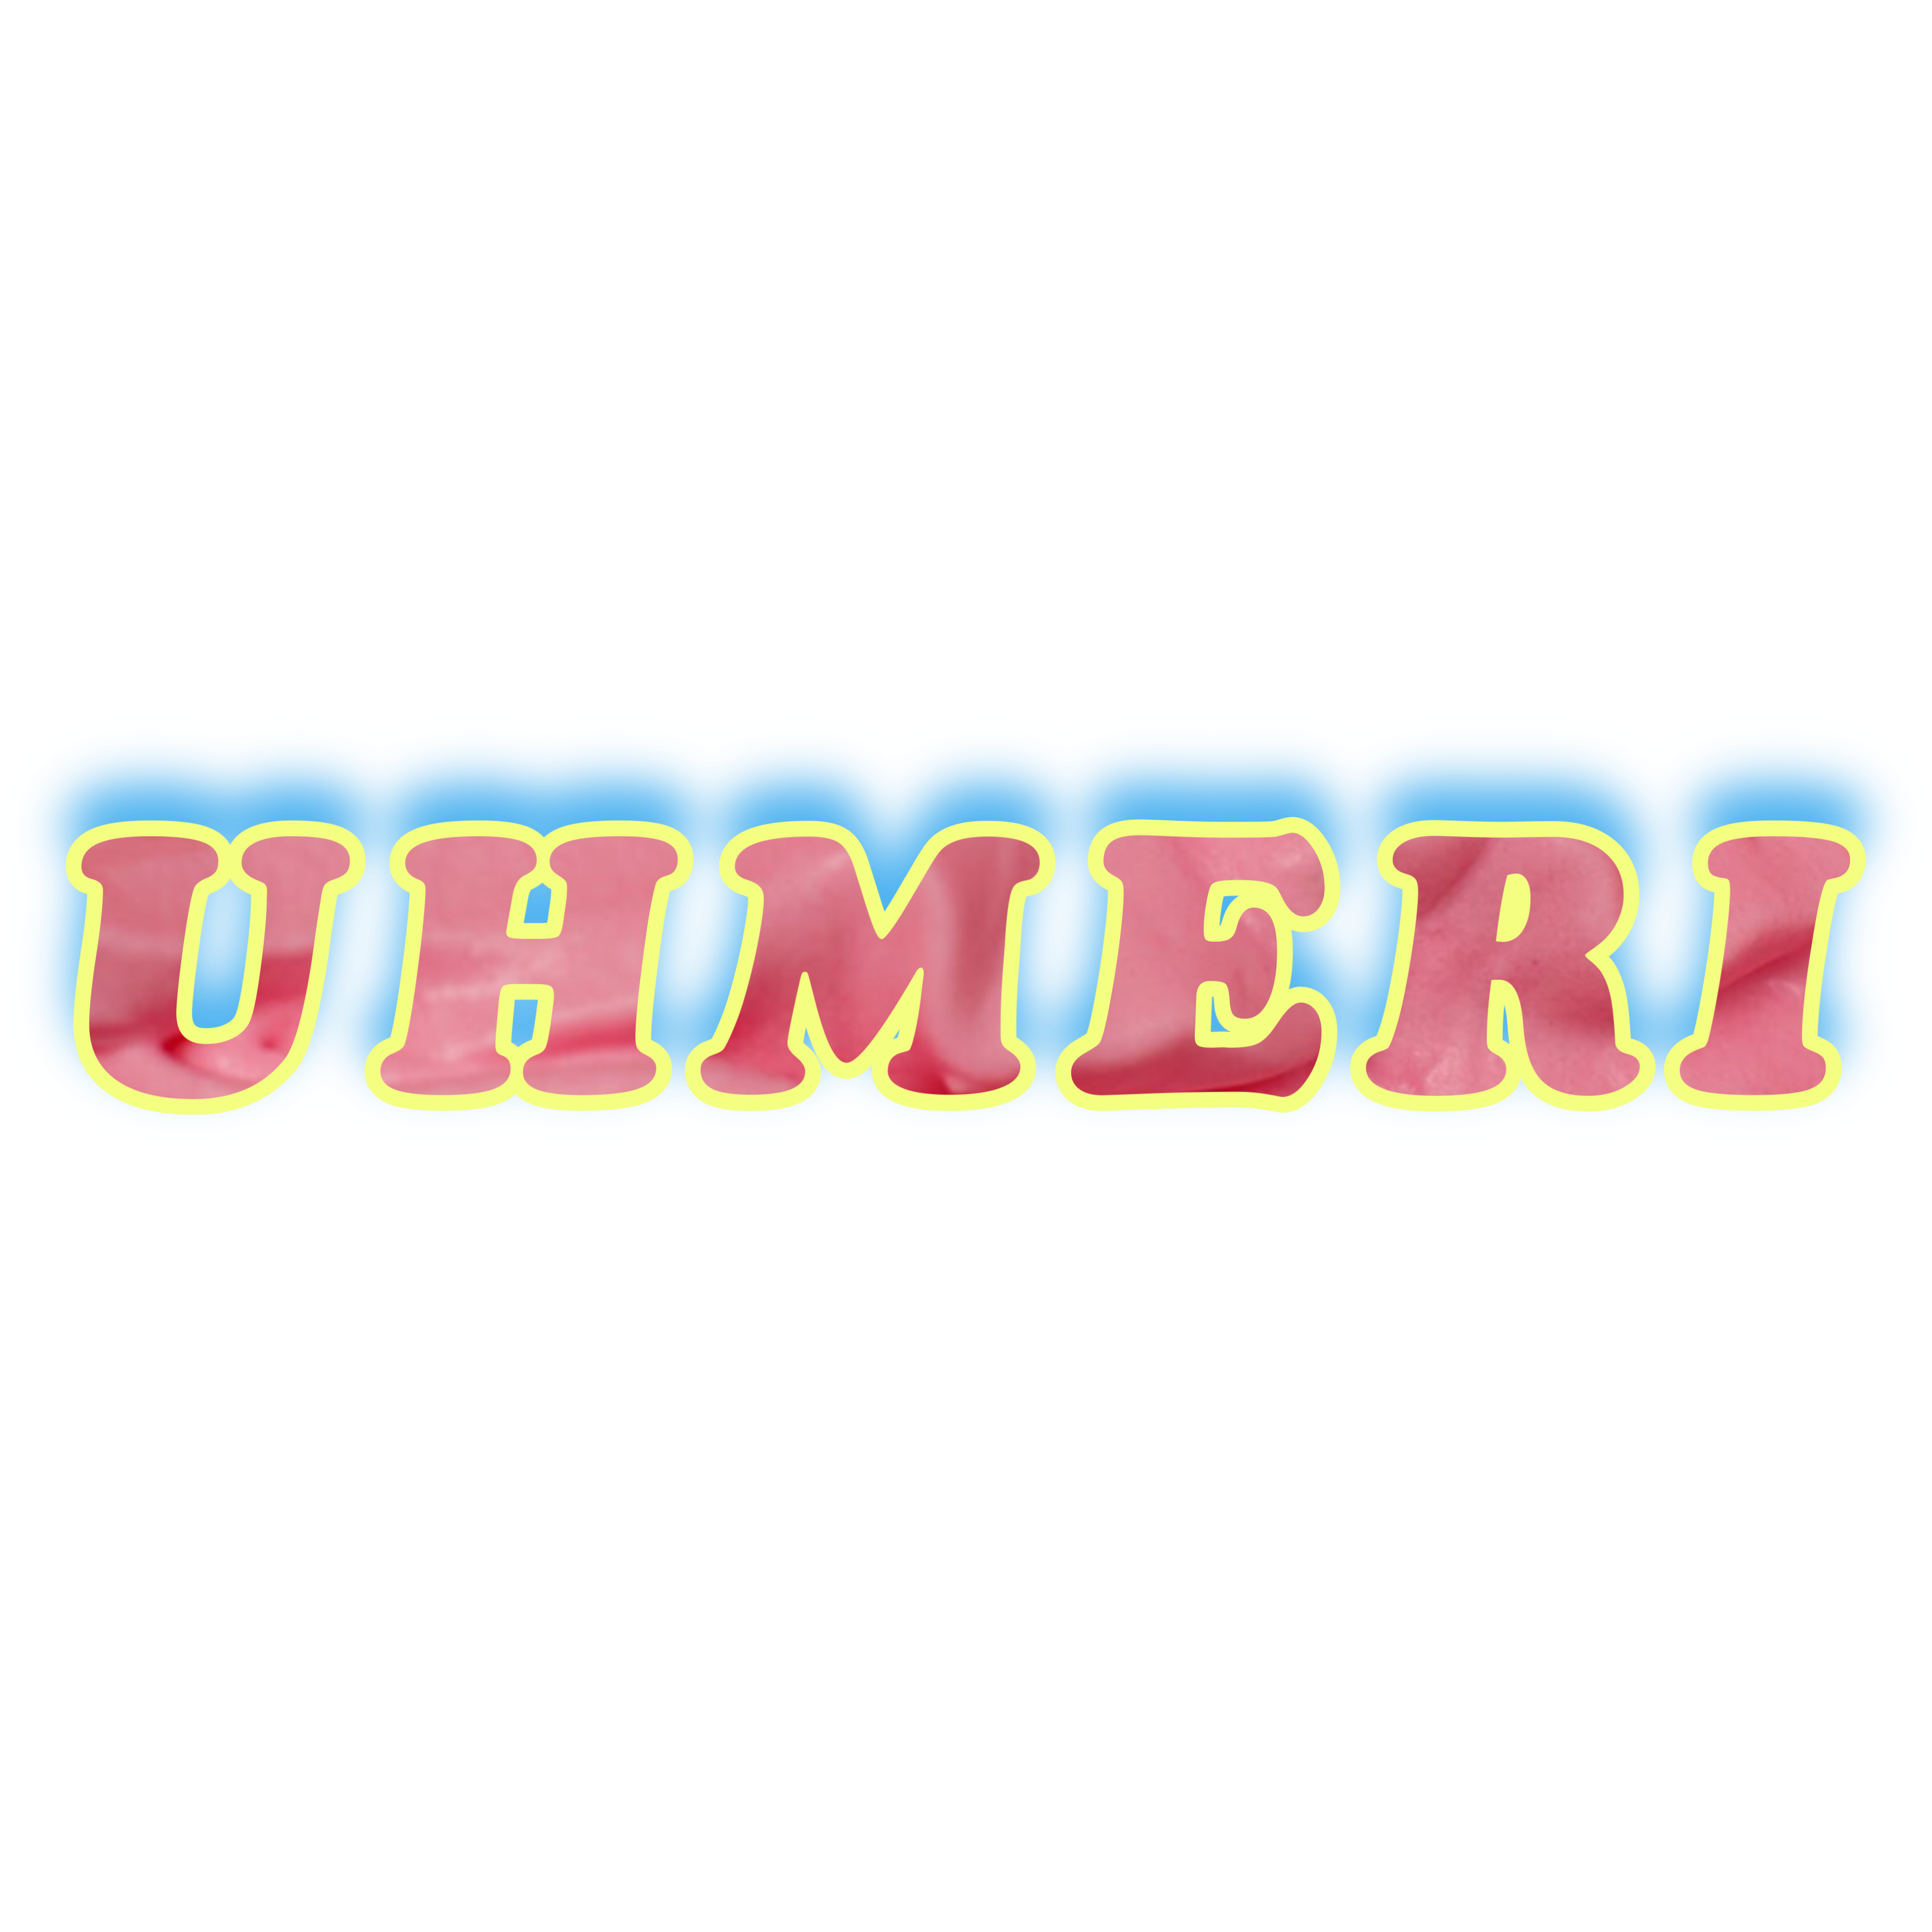 UHMERI